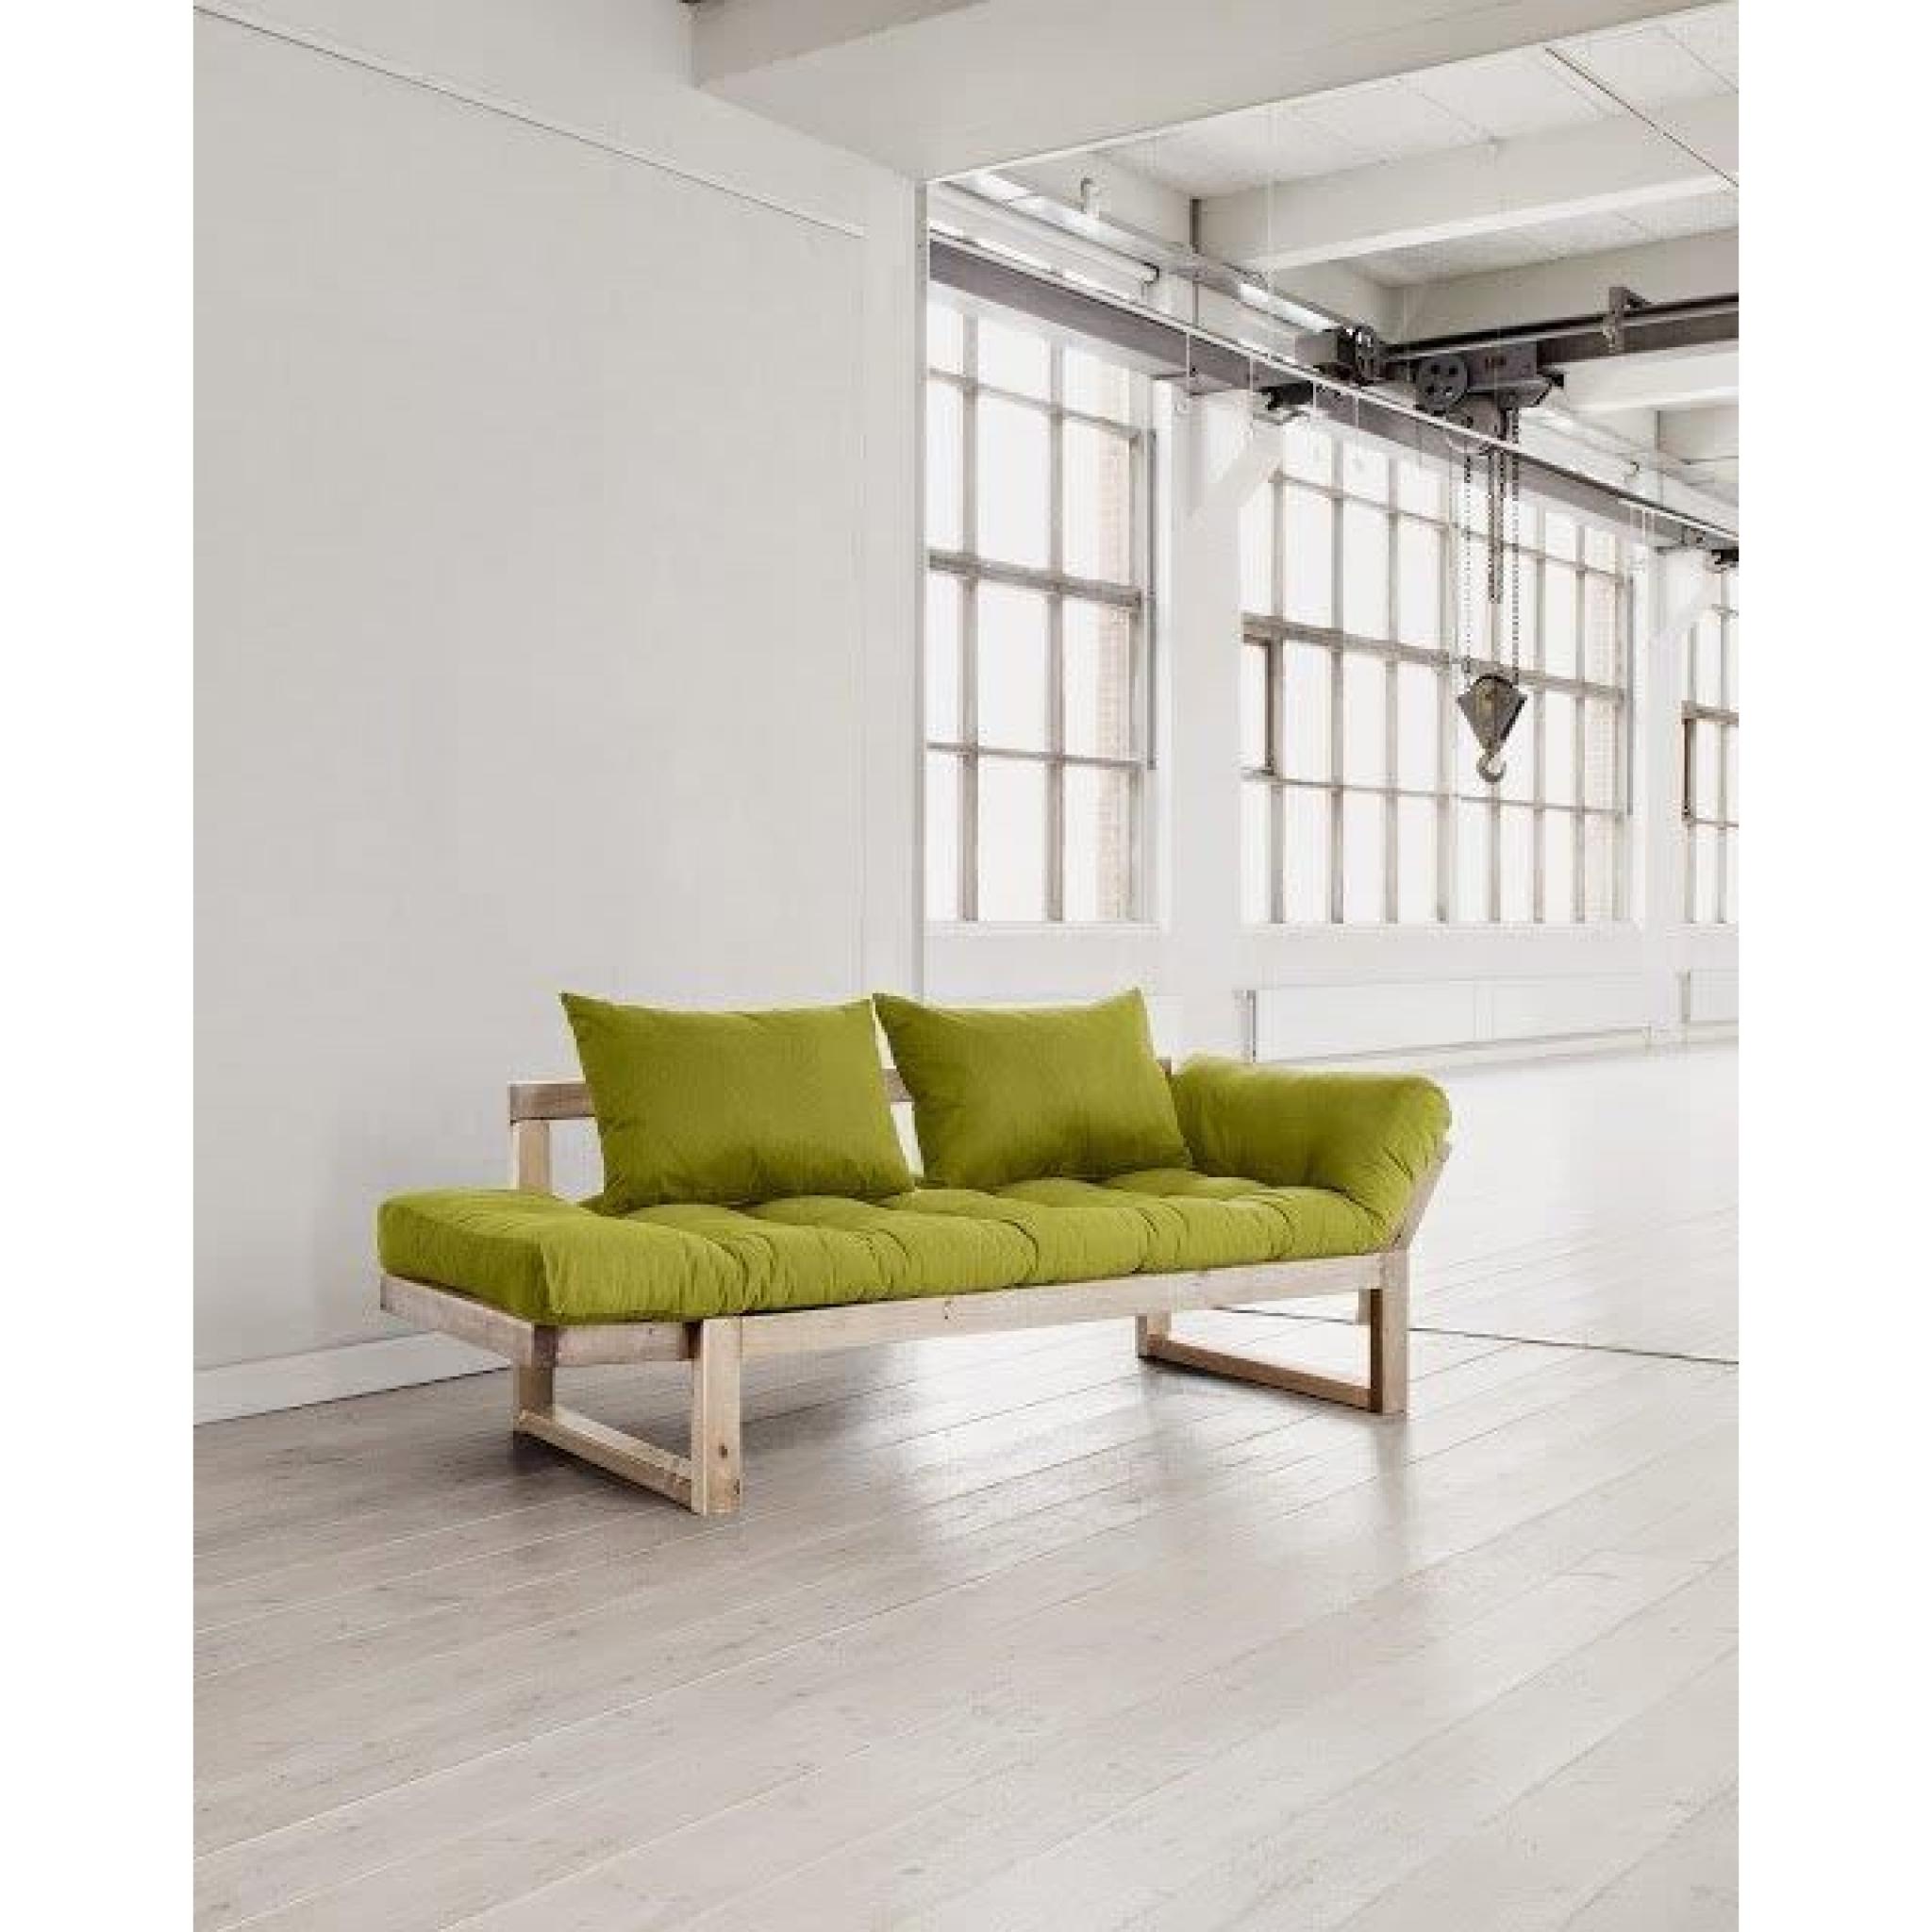 Banquette méridienne style scandinave futon vert pistache EDGE couchage 75*200cm